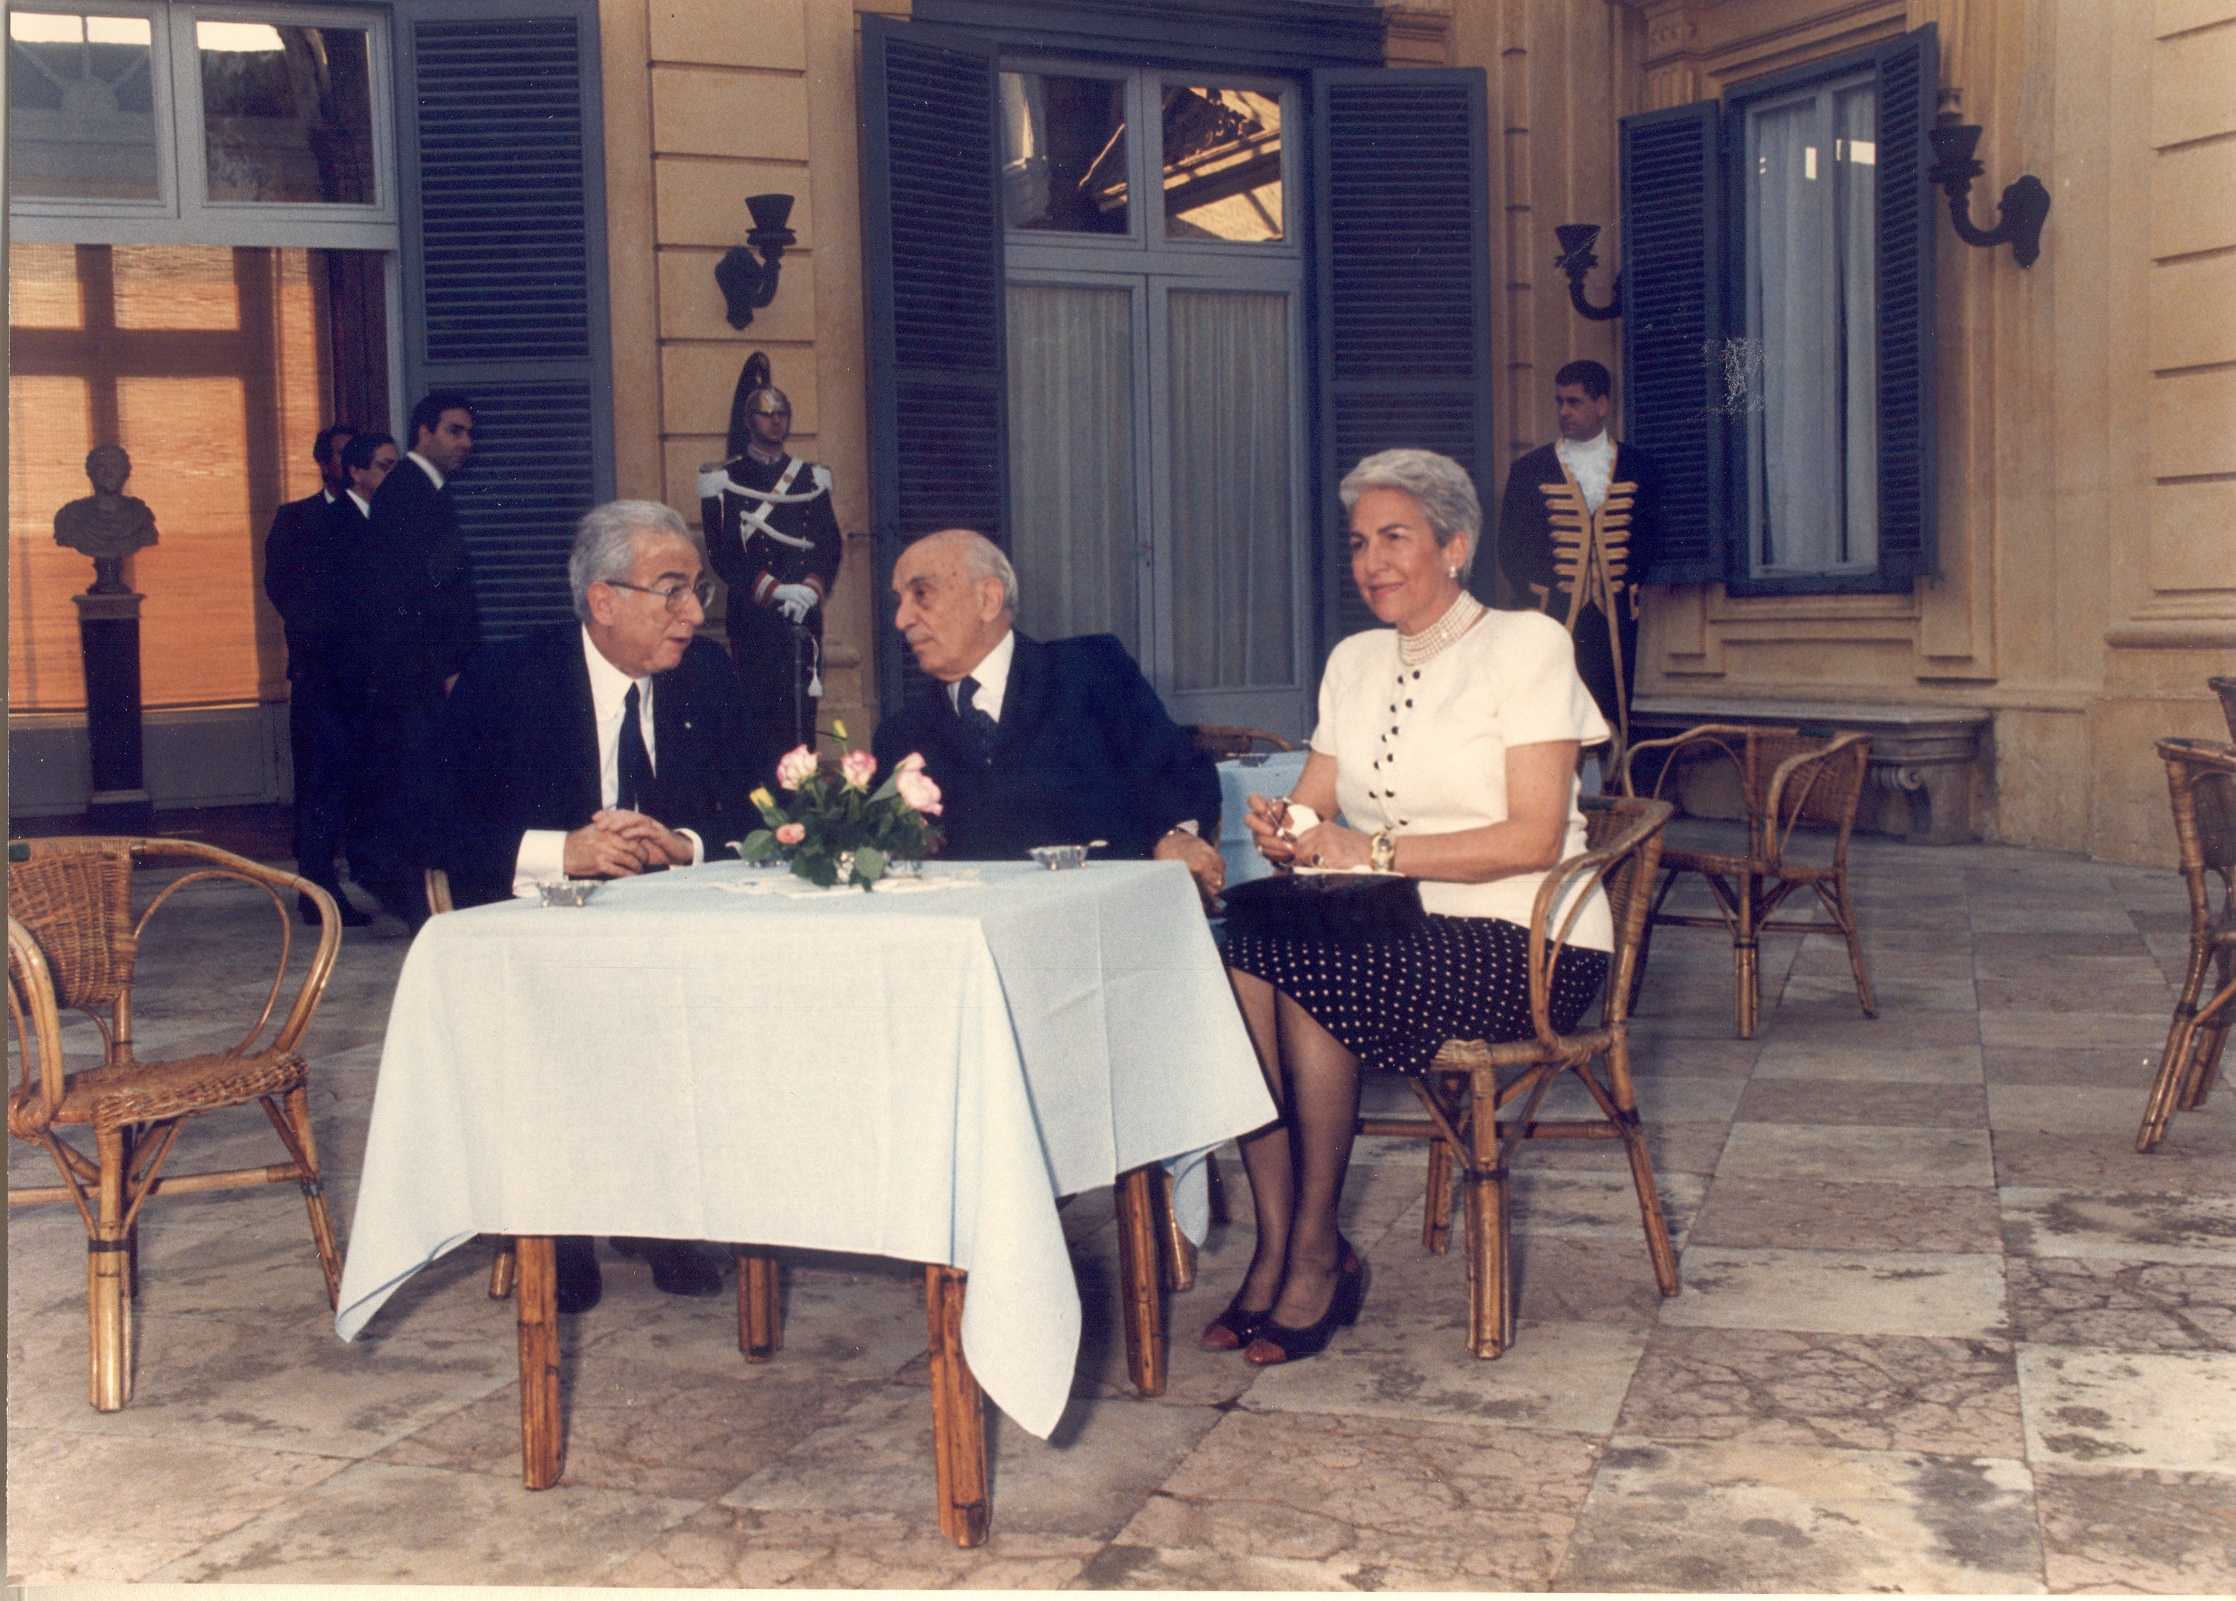   2000. Quarantesimo Anniversario della Repubblica, con il Presidente Amintore Fanfani e la Signora Fanfani.